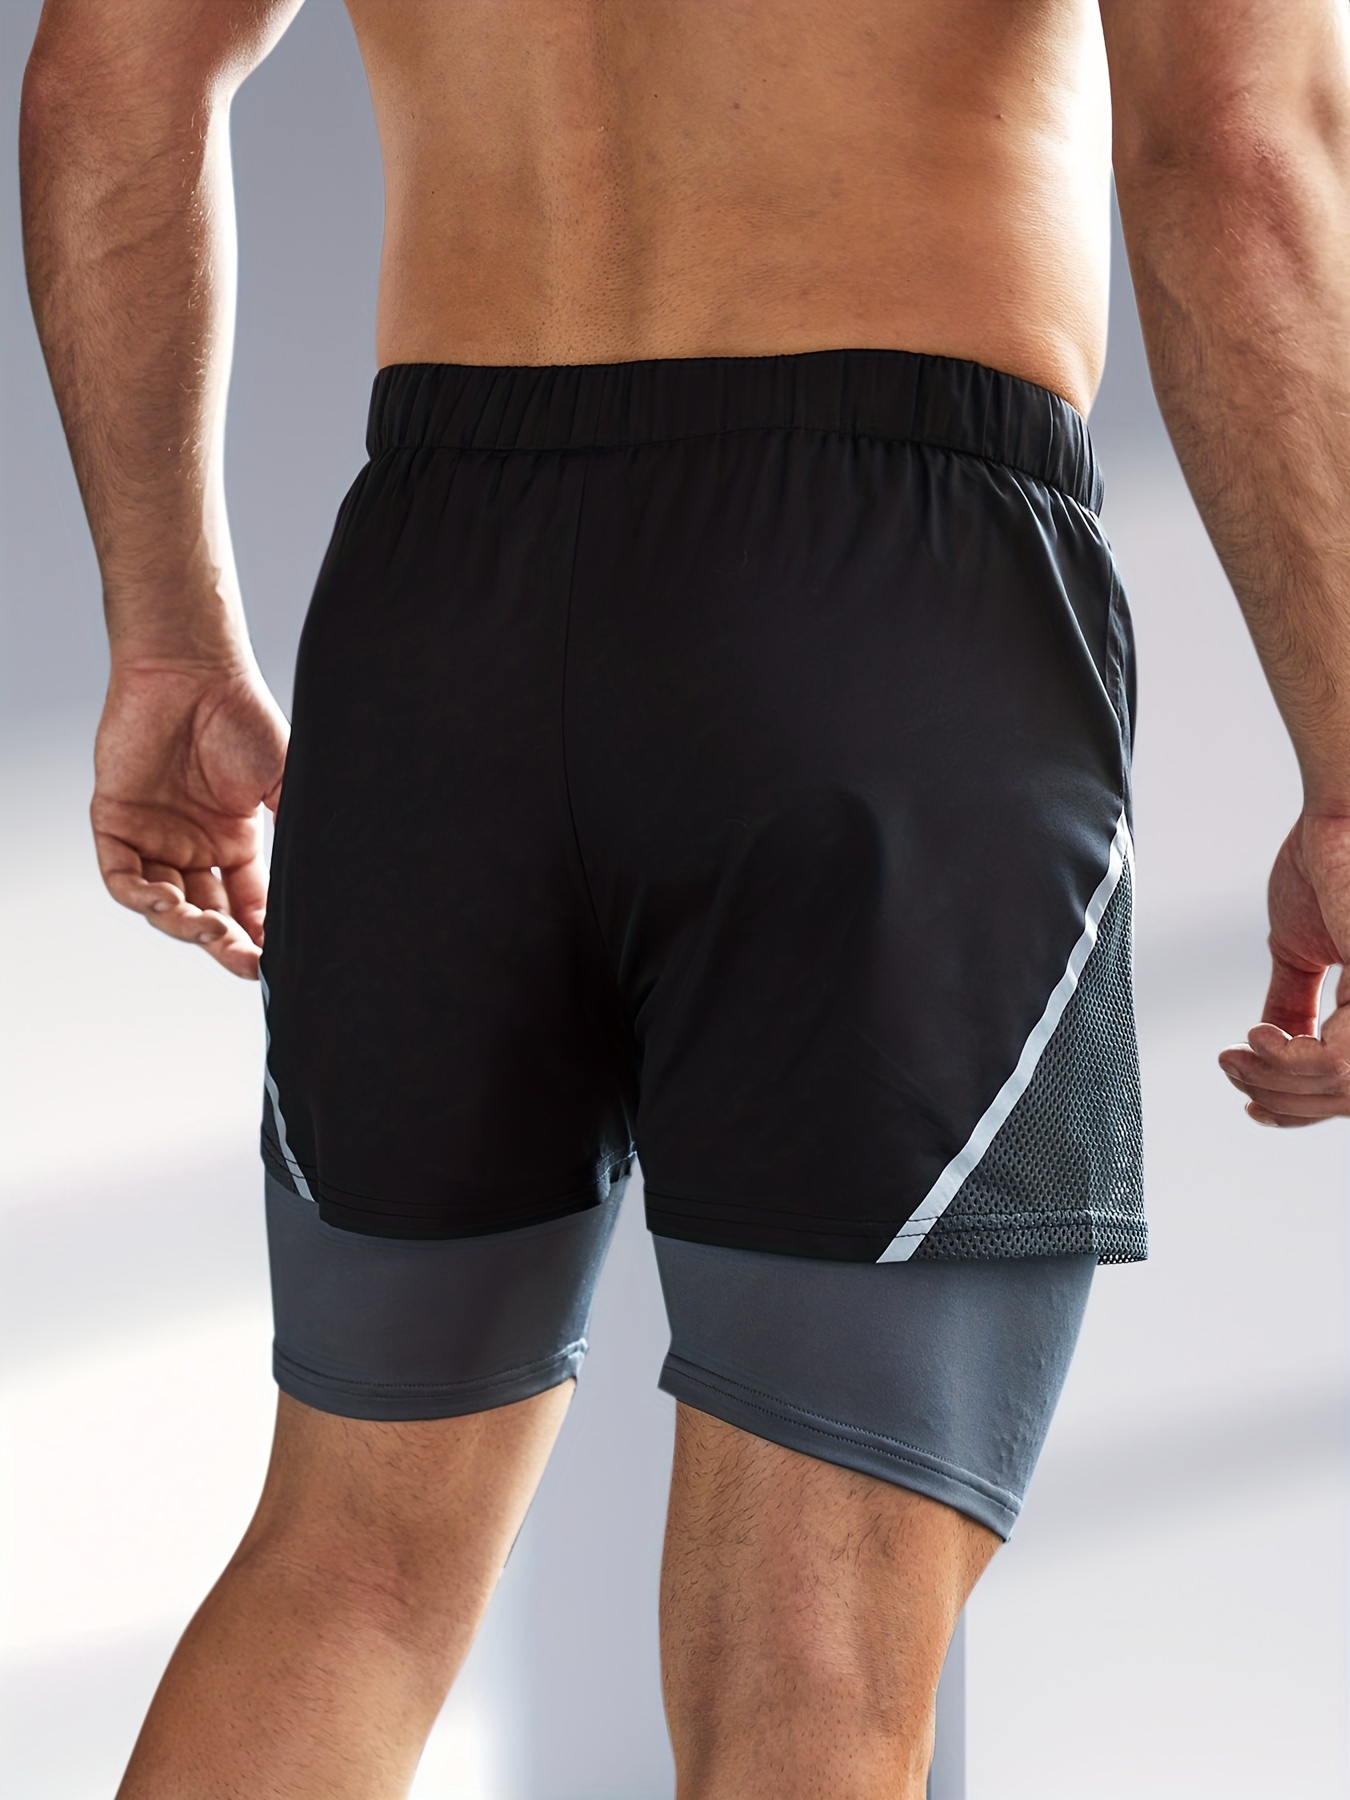 YKB - Pantalones cortos 2 en 1 para hombre, ligeros, para entrenar, correr,  hacer gimnasia, yoga, deporte, trotar